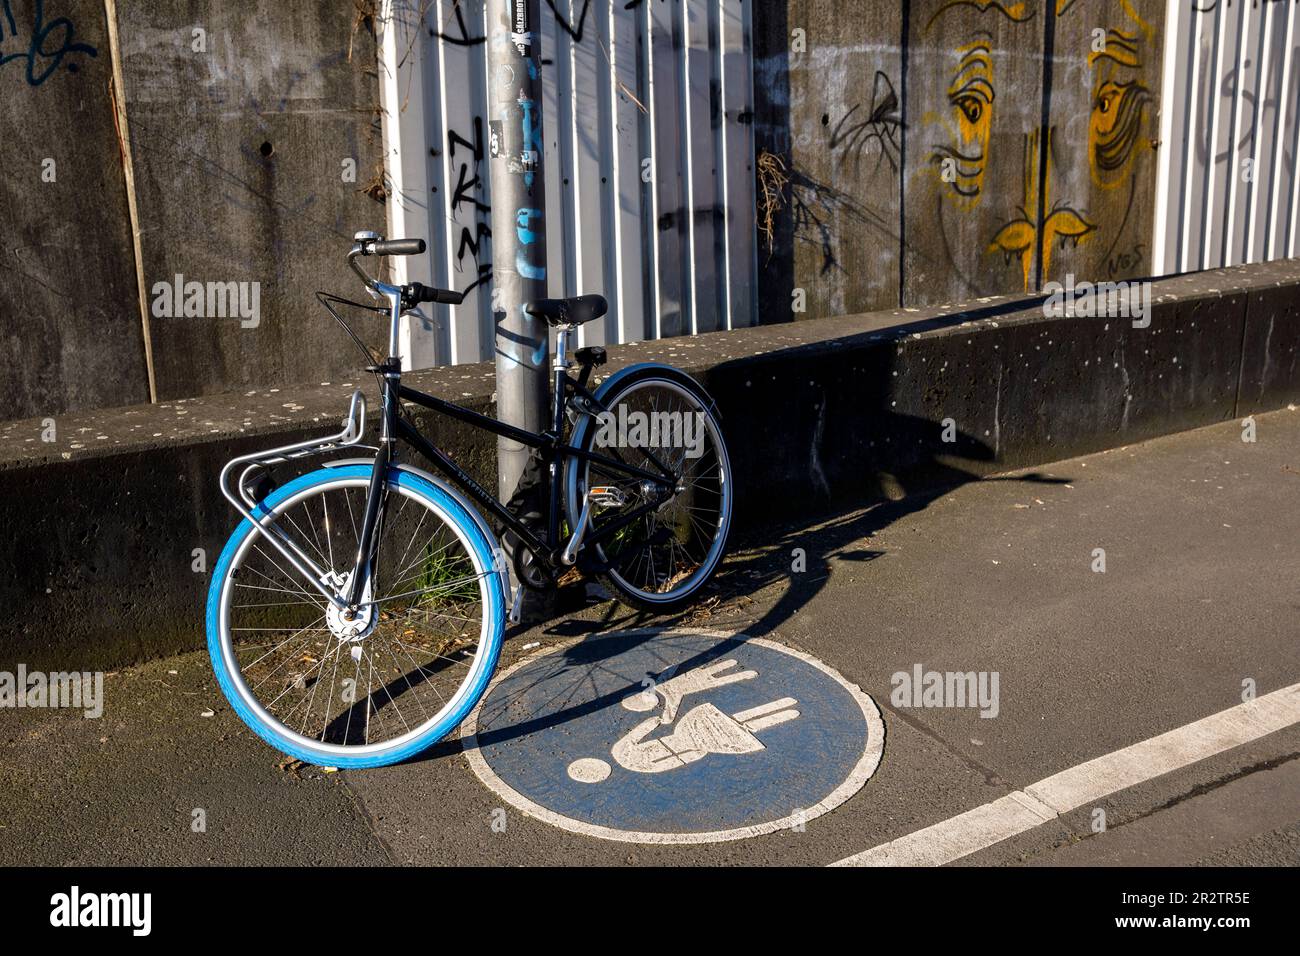 bicycle parked on a footpath in the district of Deutz, Cologne, Germany. auf einem Fussweg abgestelltes Fahrrad im Stadtteil Deutz, Koeln, Deutschland Stock Photo